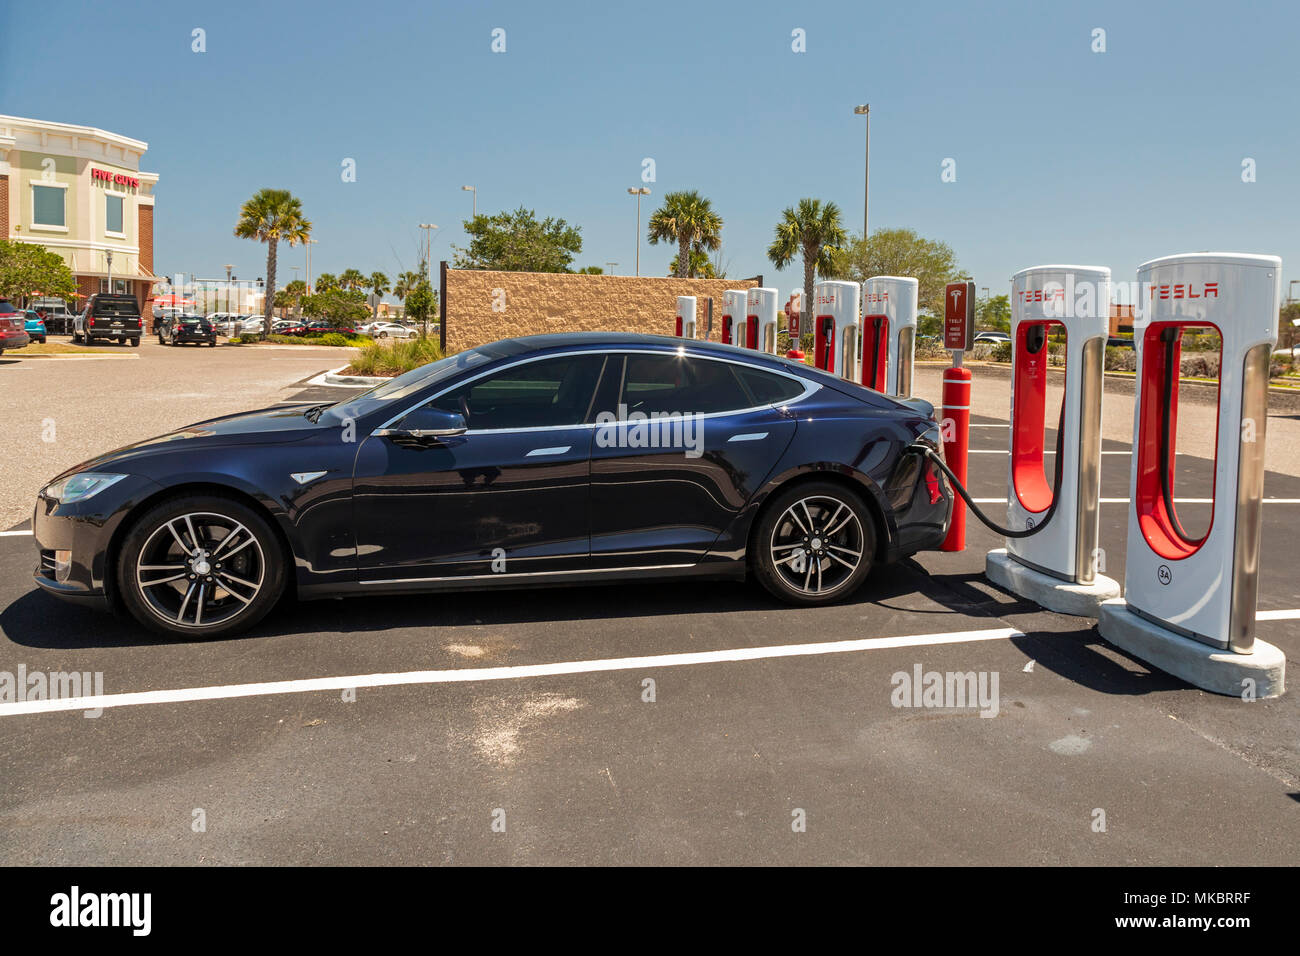 West Melbourne, Florida - ein Tesla Model S laden bei einem elektrischen Auto Kompressor entfernt. Stockfoto